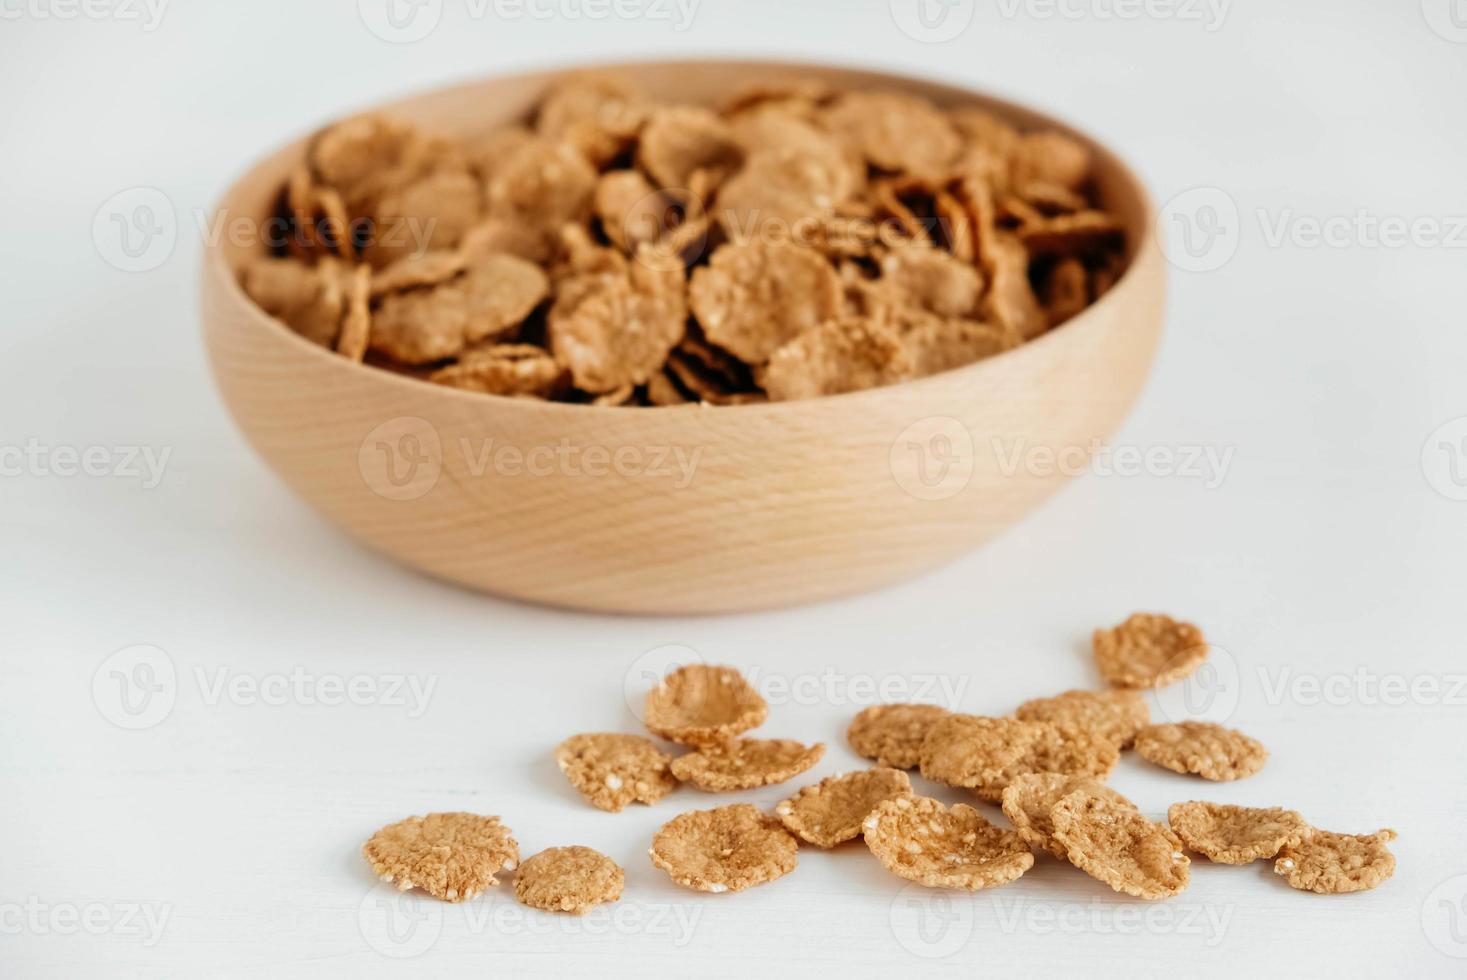 copos de cereales secos y crujientes en un cuenco de madera sobre fondo blanco foto